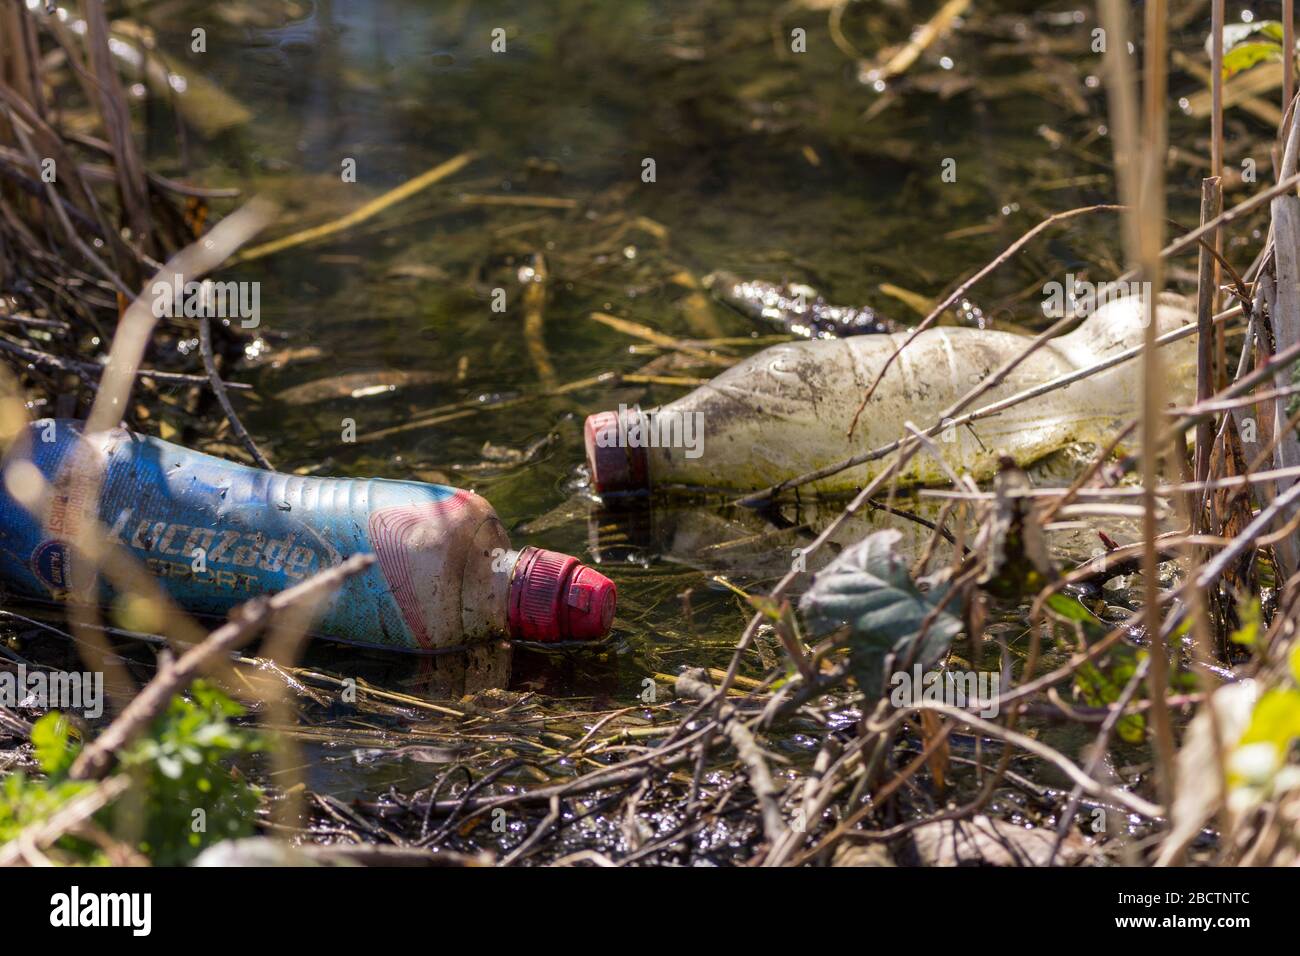 Wasserverschmutzung weggeworfene Lebensmittelbehälter zwei Plastikflaschen im Teichbereich Getränkebehälter Müll unrecycelter Kunststoff achtlos in Teich geworfen Stockfoto